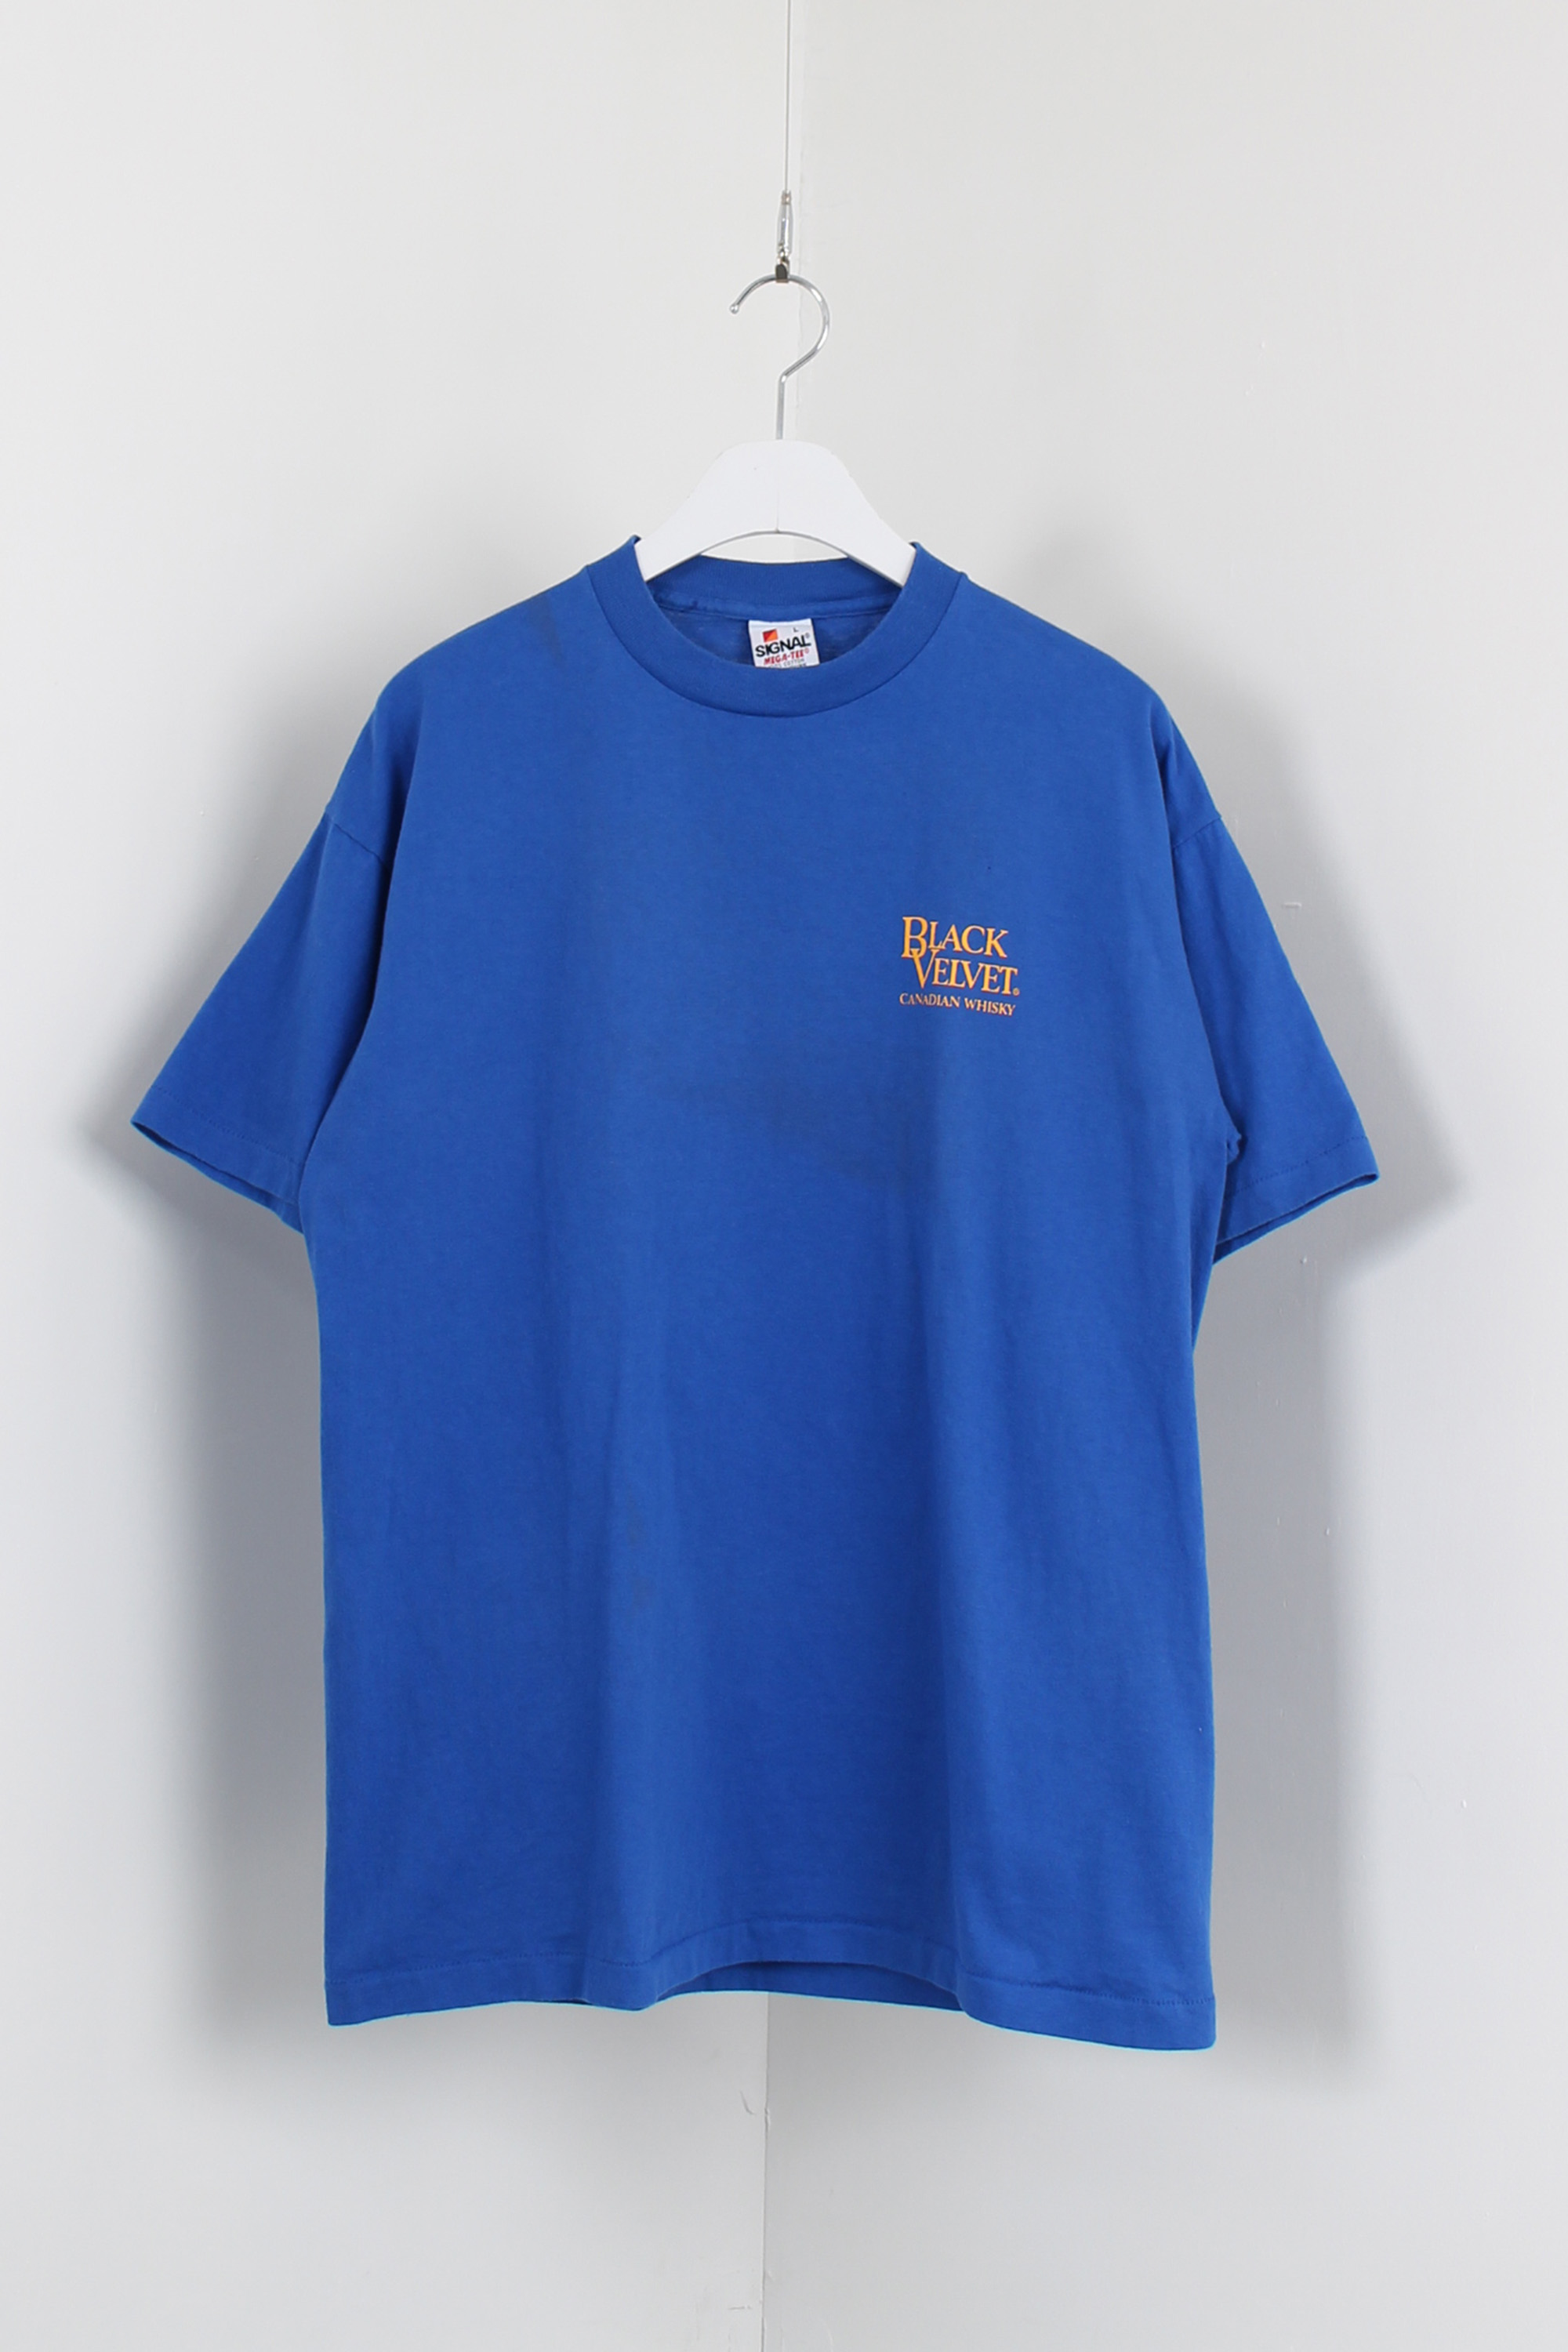 90s SIGNAL t-shirt